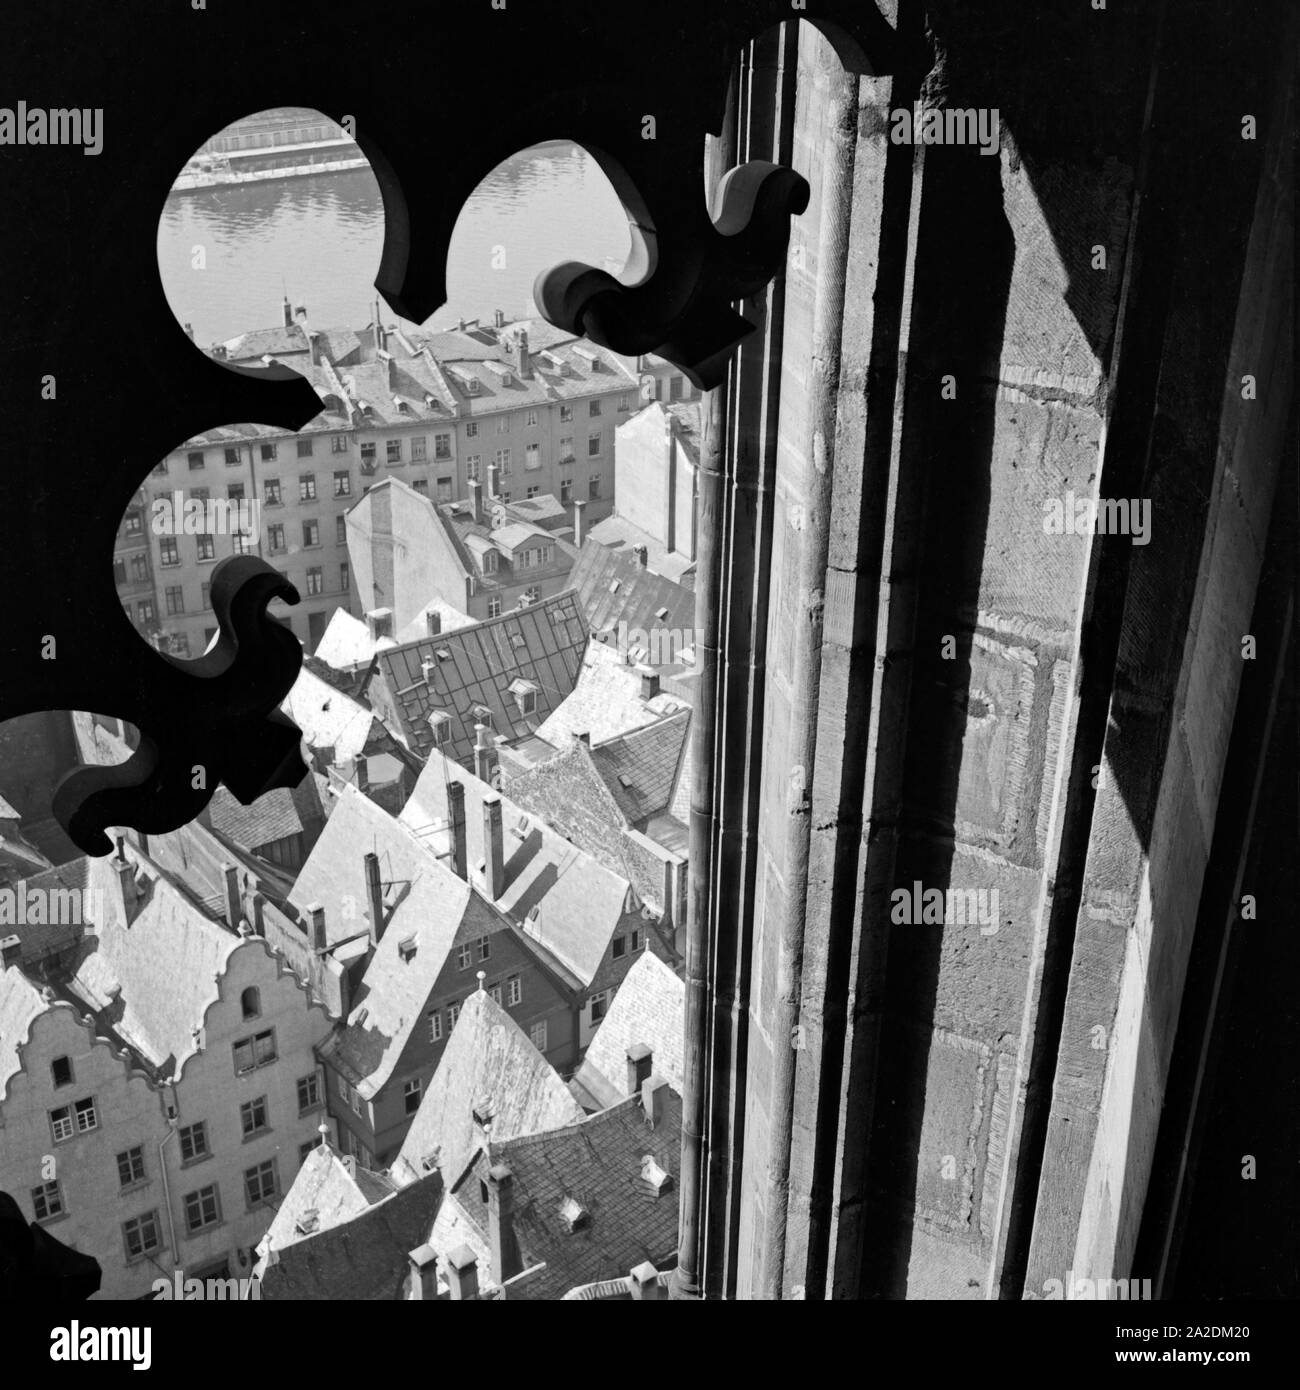 Blick vom Kaiserdom St. Barholomäus auf die Dächer der Altstadt von Frankfurt am Main, Deutschland 1930er Jahre. Vista dal campanile di San Bartolomeo del duomo e sui tetti della città vecchia di Francoforte, Germania 1930s. Foto Stock